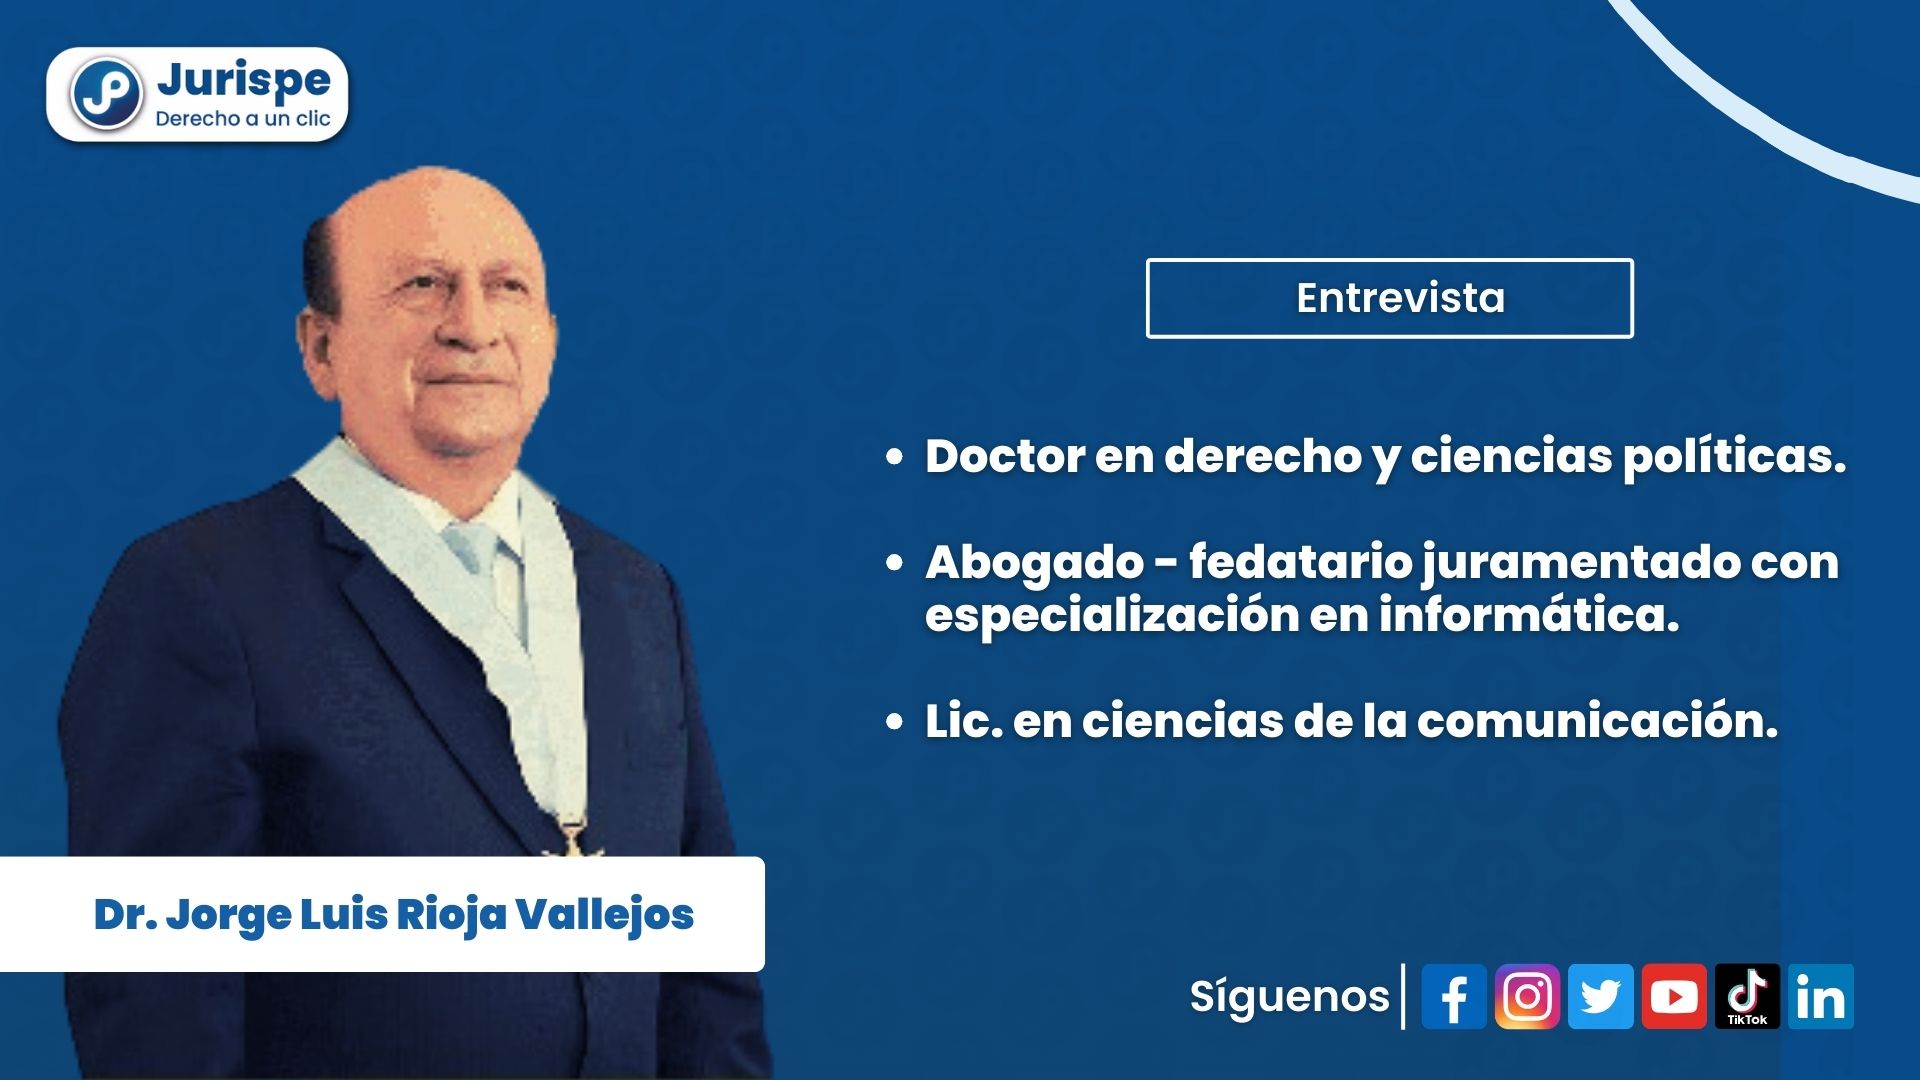 [VÍDEO] Entrevista al Dr. Jorge Luis Rioja Vallejos